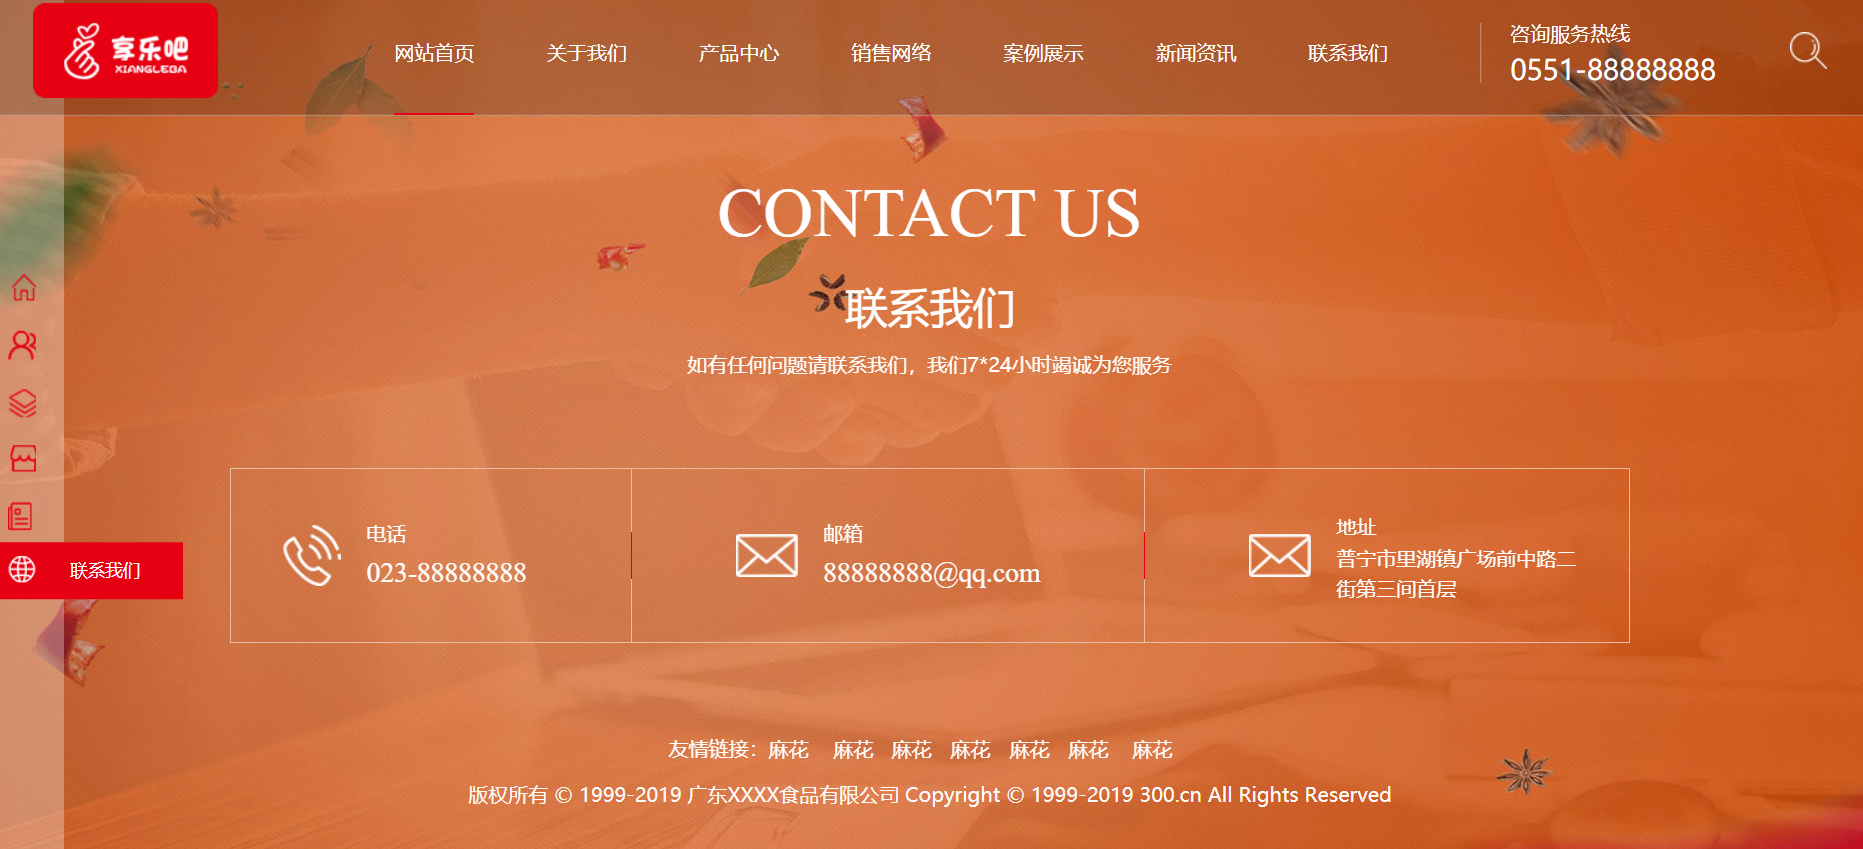 HTML5红色宽屏样式餐饮公司企业网站模板代码下载